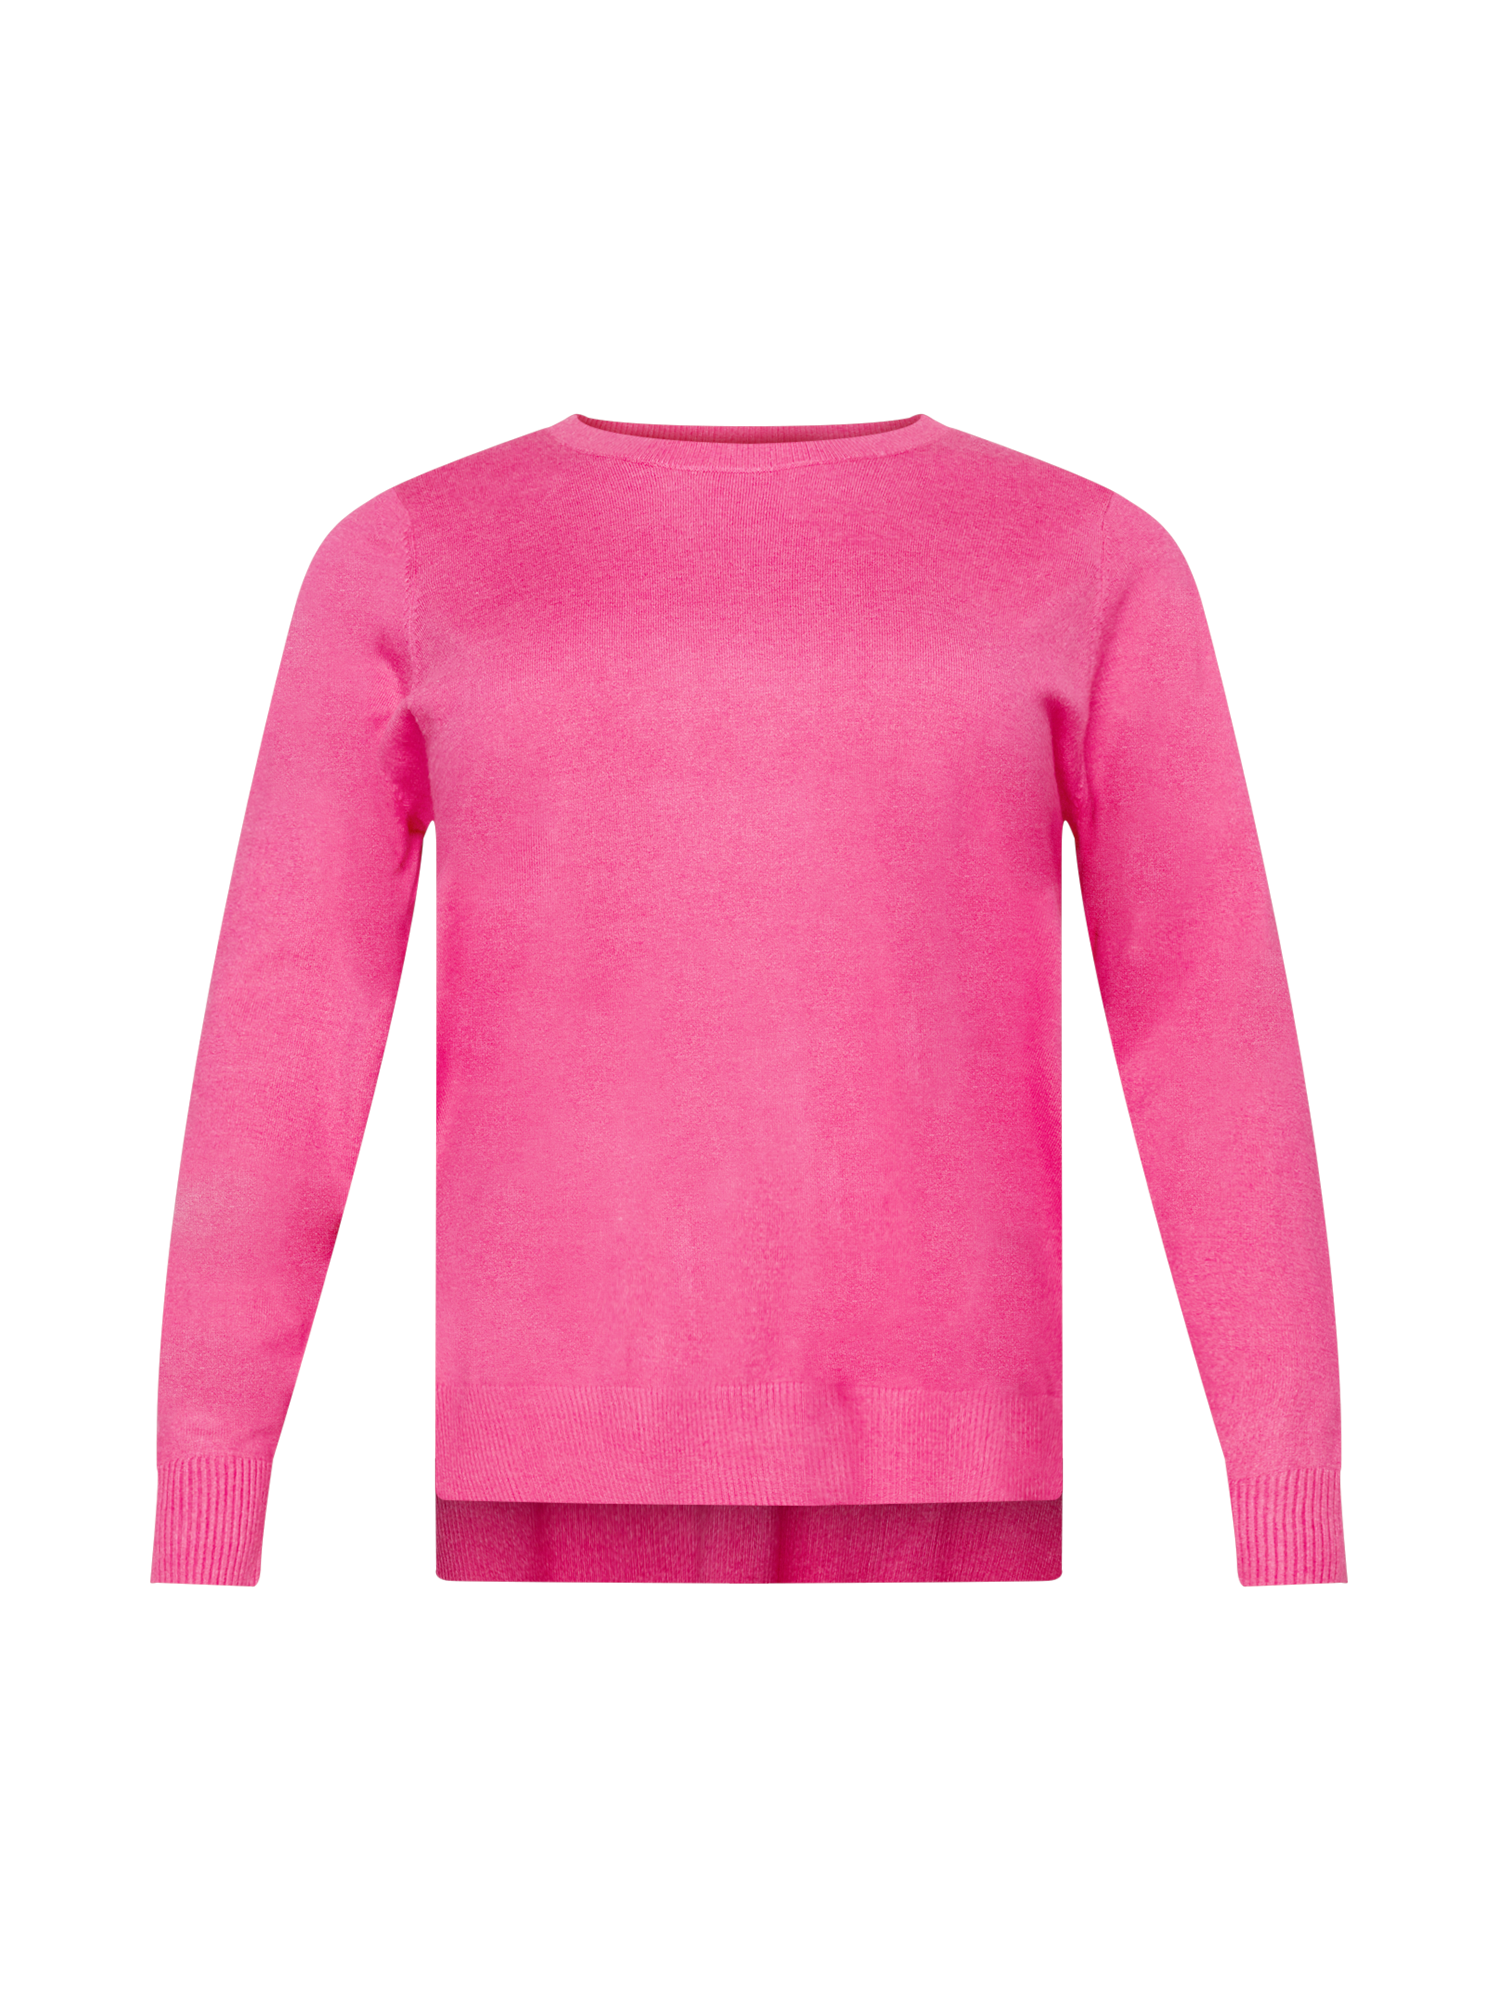 Kobiety Odzież Zizzi Sweter MELLA w kolorze Różowym 